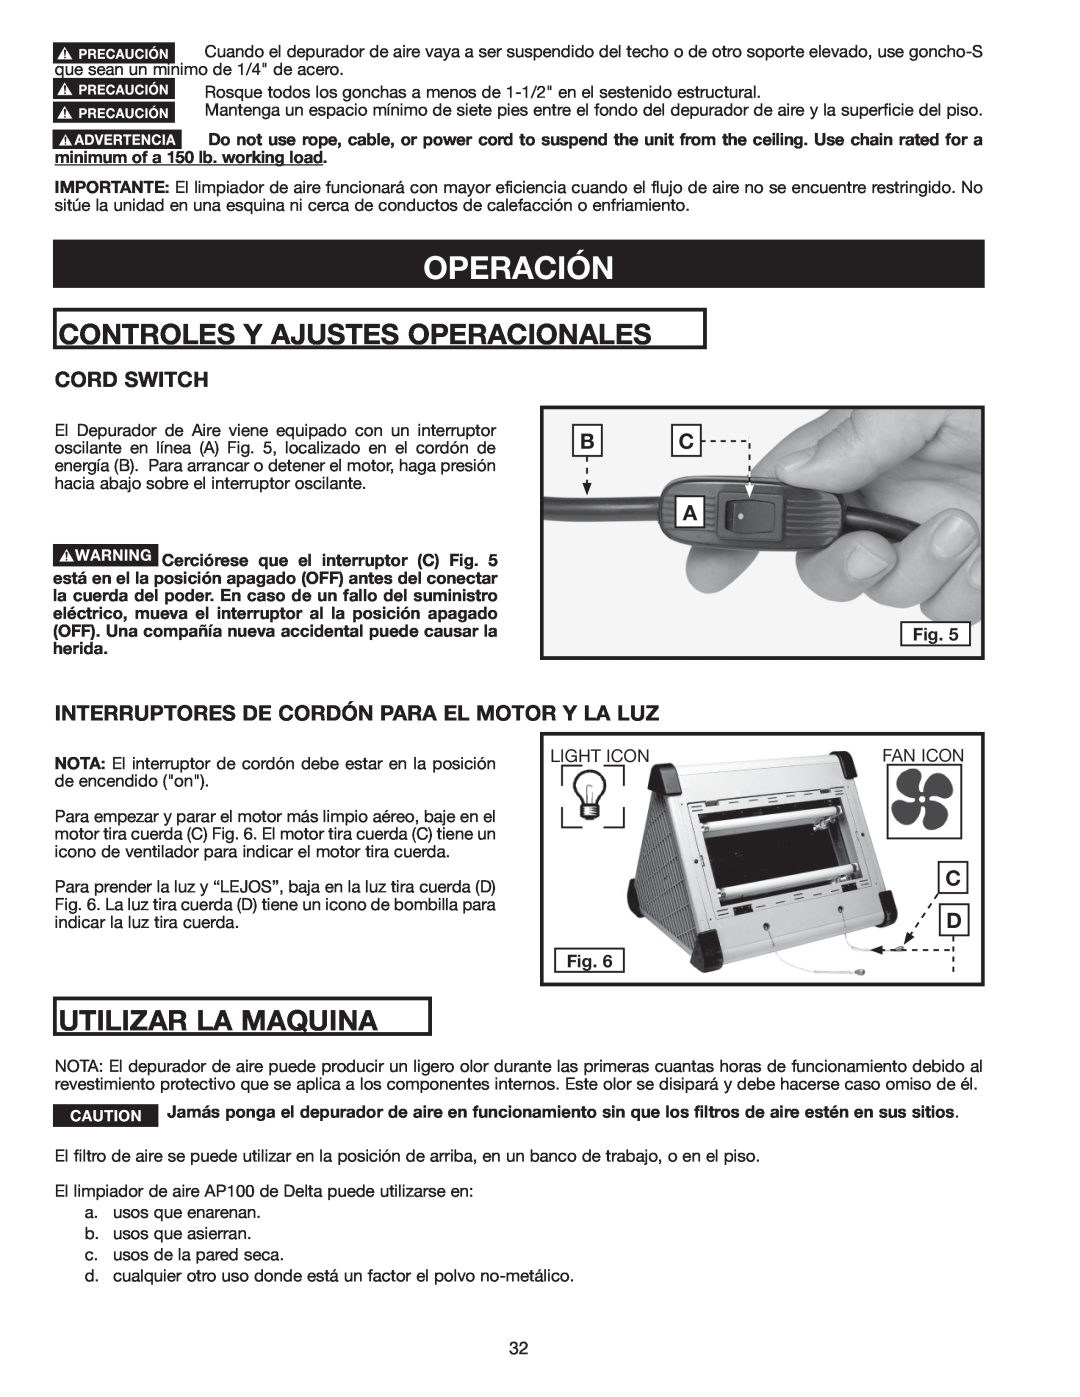 Delta AP-100 instruction manual Operación, Controles Y Ajustes Operacionales, Utilizar La Maquina, Cord Switch 